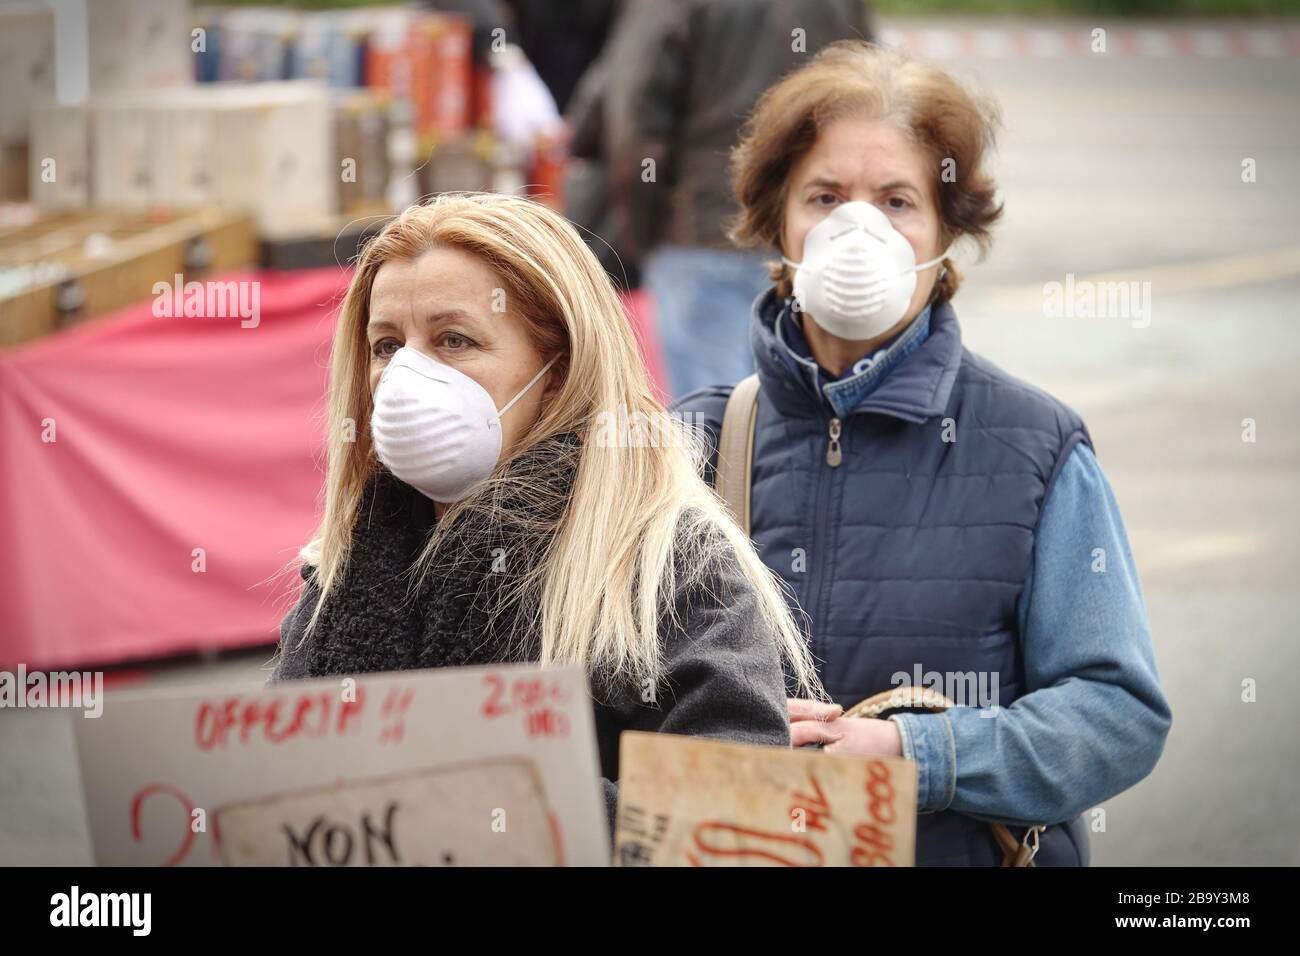 Menschen mit Gesichtsmasken zum Schutz vor COVID-19 kaufen auf dem Markt Gemüse und Obst ein. Turin, Italien - März 2020 Stockfoto